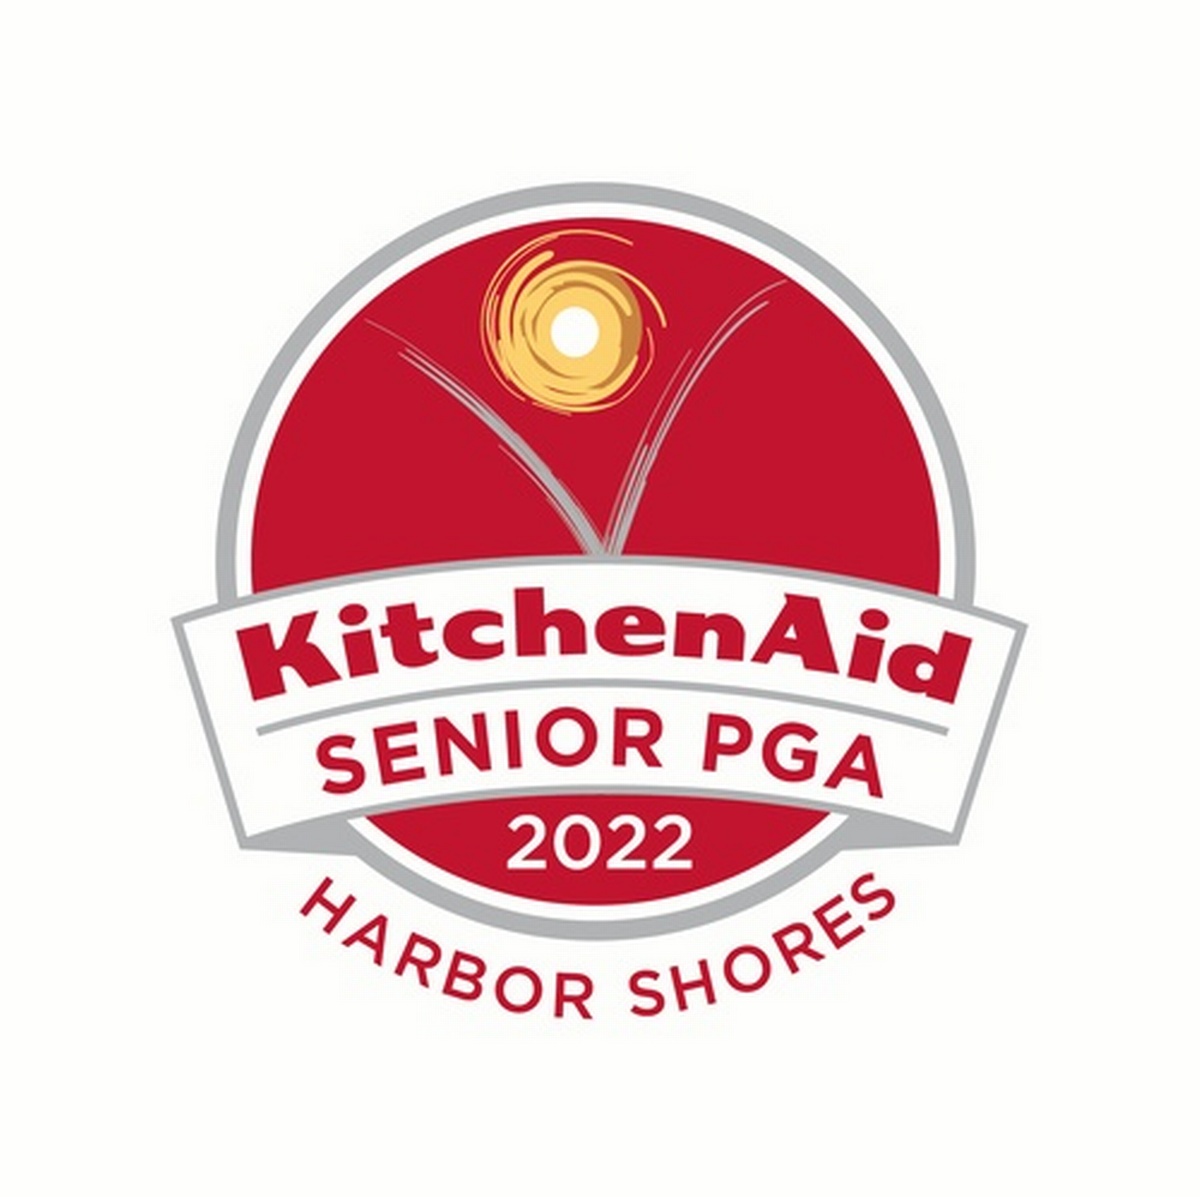 Young Professionals May Mixer at the 2022 KitchenAid Senior PGA Championship